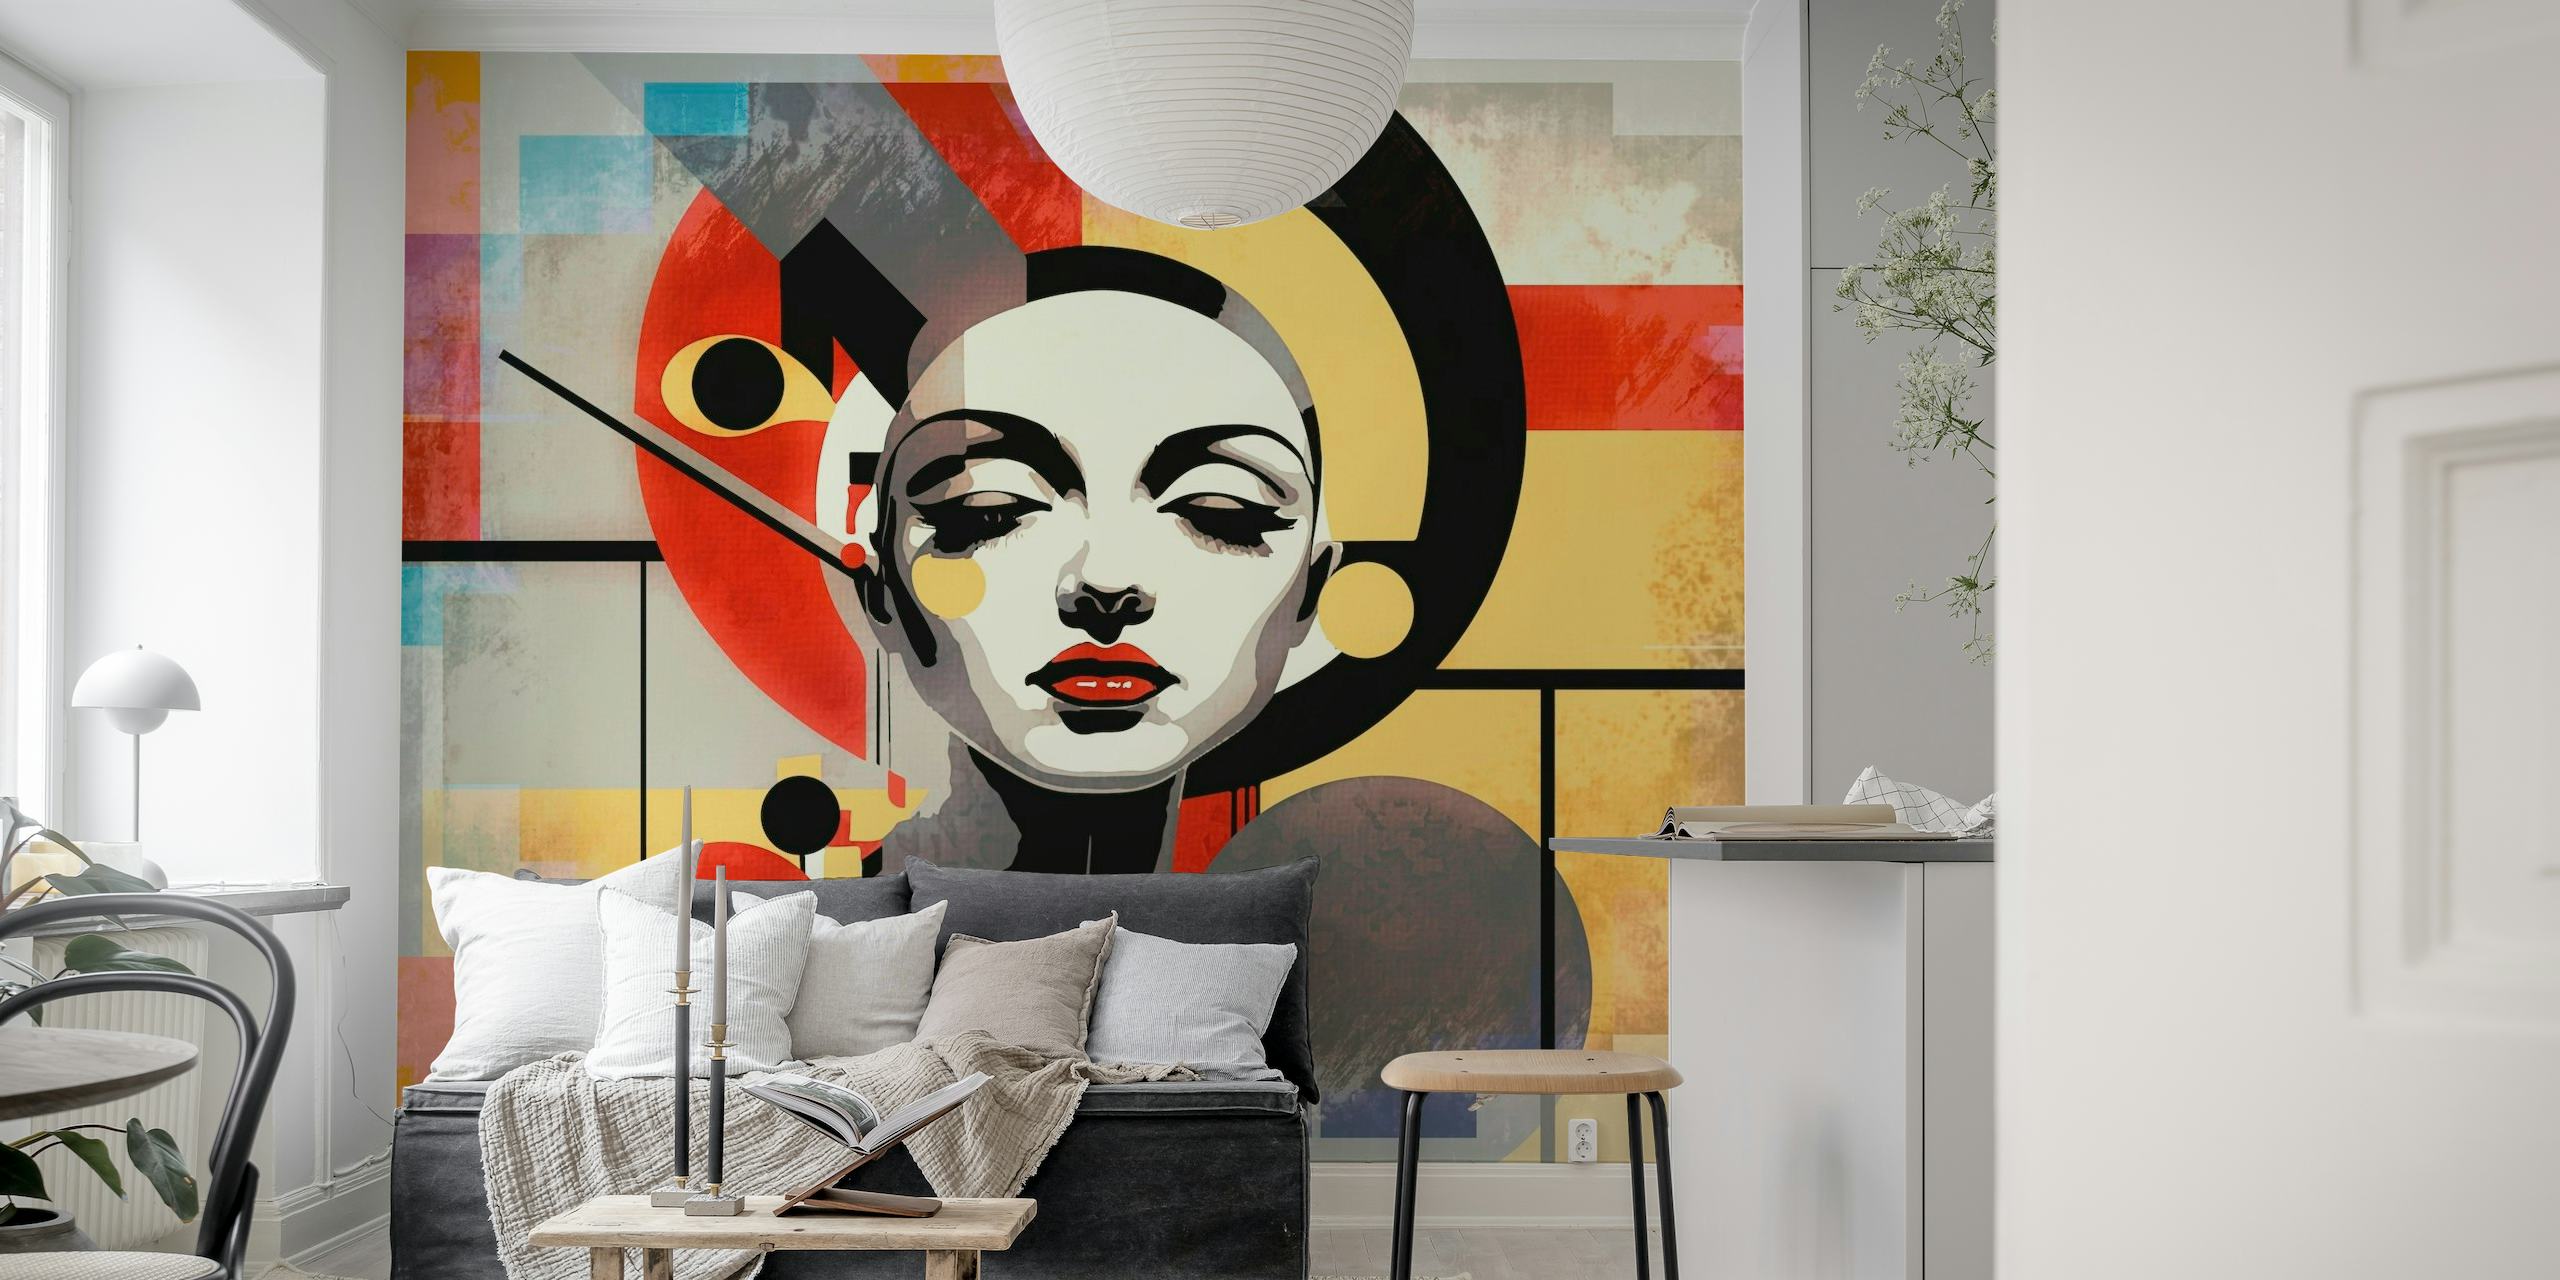 Väggmålning i art déco-stil med en stiliserad dam i djärva geometriska mönster och livfulla färger